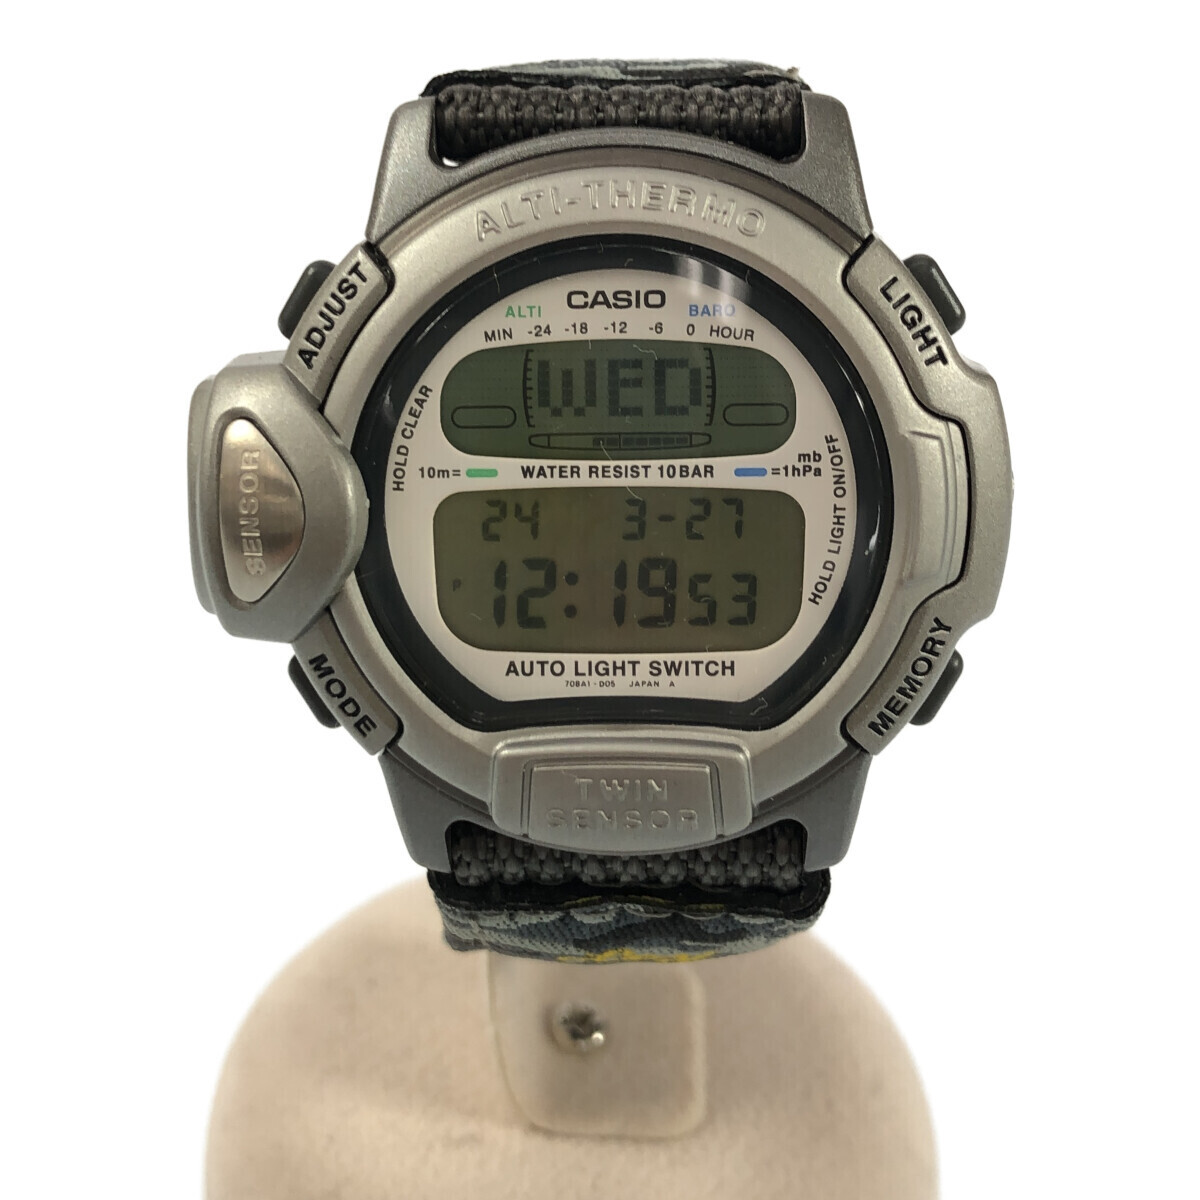 CASIO PRO TREK [men3730M] TREK PRL-20 Trek наручные часы WWF батарейка заменен прекрасный товар мужской OC